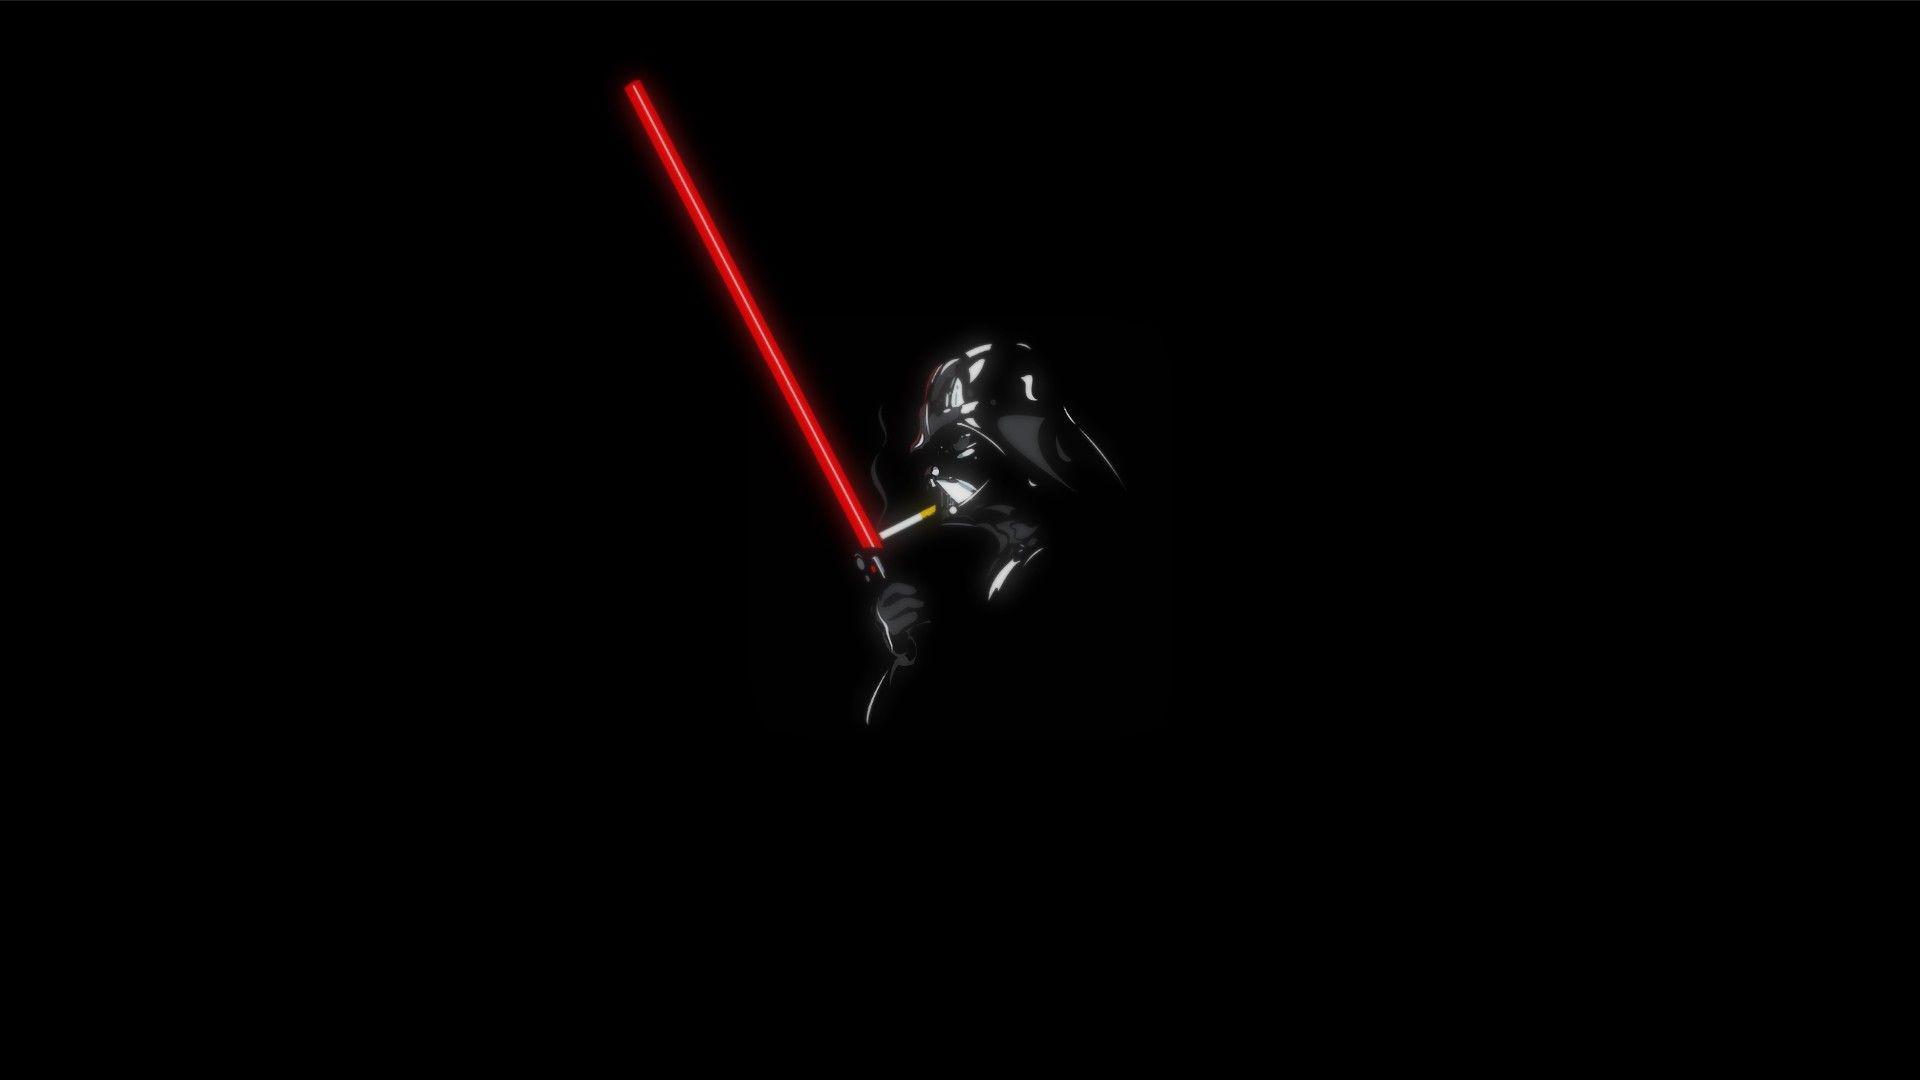 Darth Vader Star Wars Humor Cigarettes Lightsaber Full HD Wallpaper